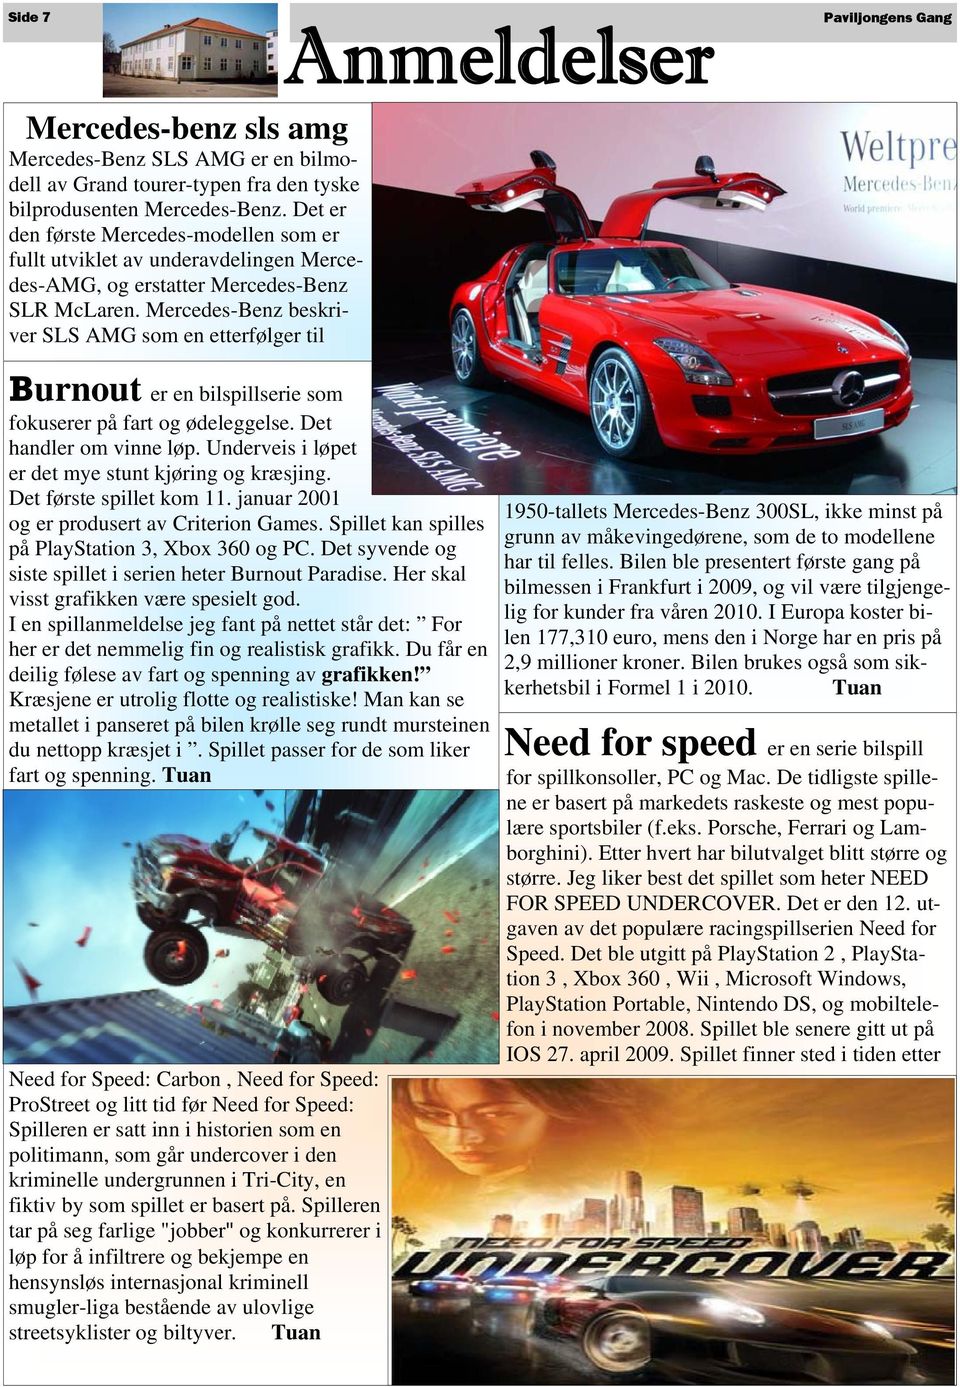 Mercedes-Benz beskriver SLS AMG som en etterfølger til Burnout er en bilspillserie som fokuserer på fart og ødeleggelse. Det handler om vinne løp.